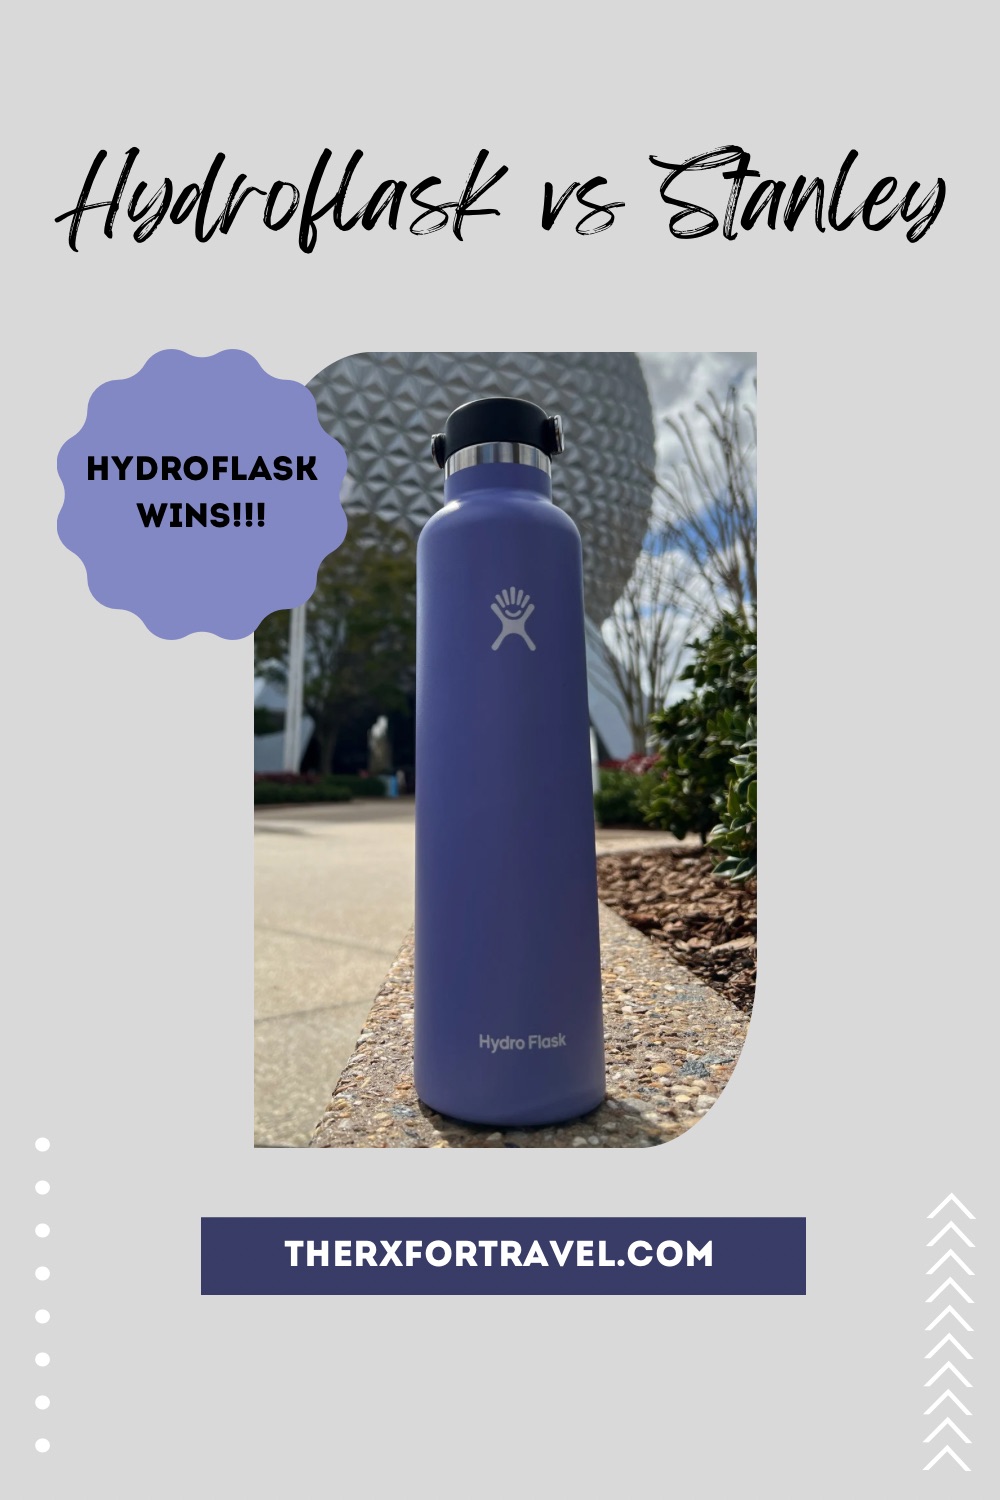 My favorite purple hydro flask water bottle pinterest pin